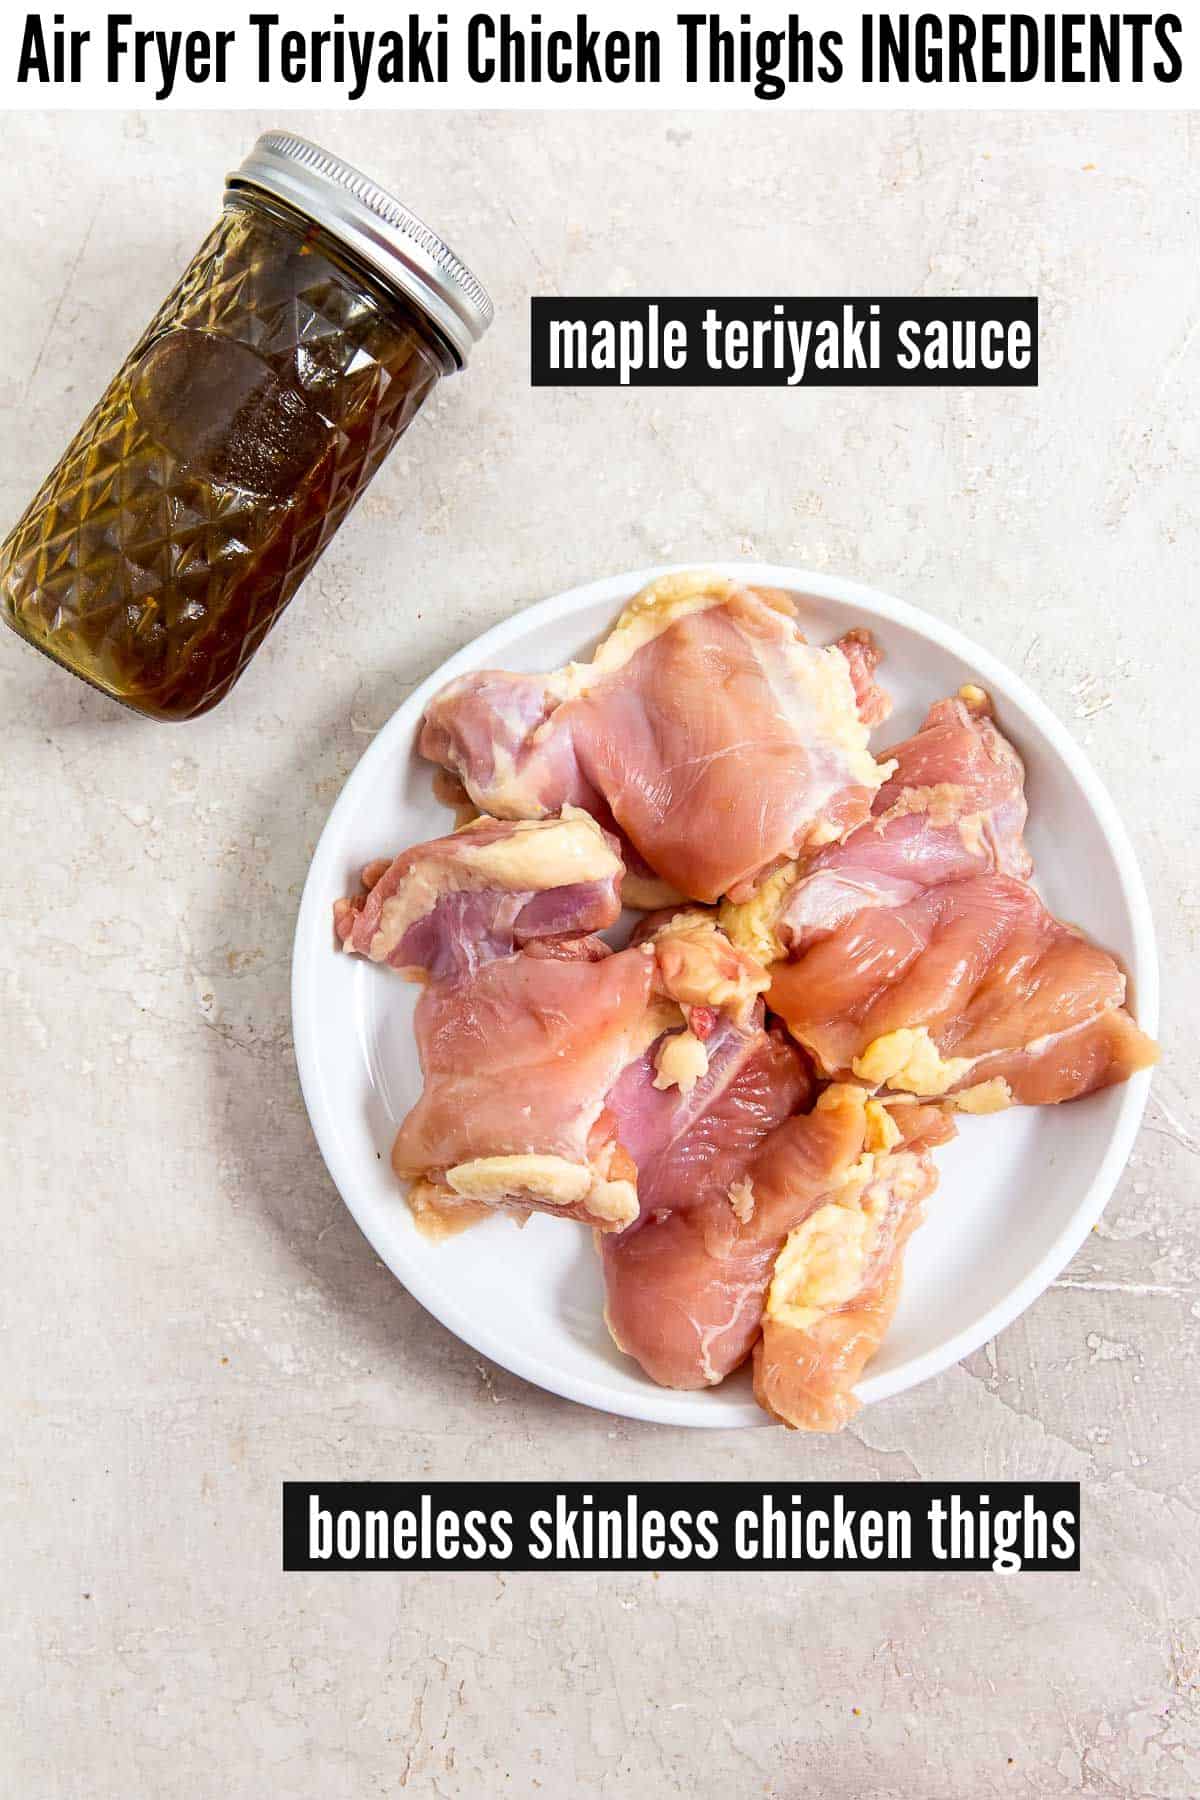 air fryer teriyaki chicken thighs labelled ingredients.